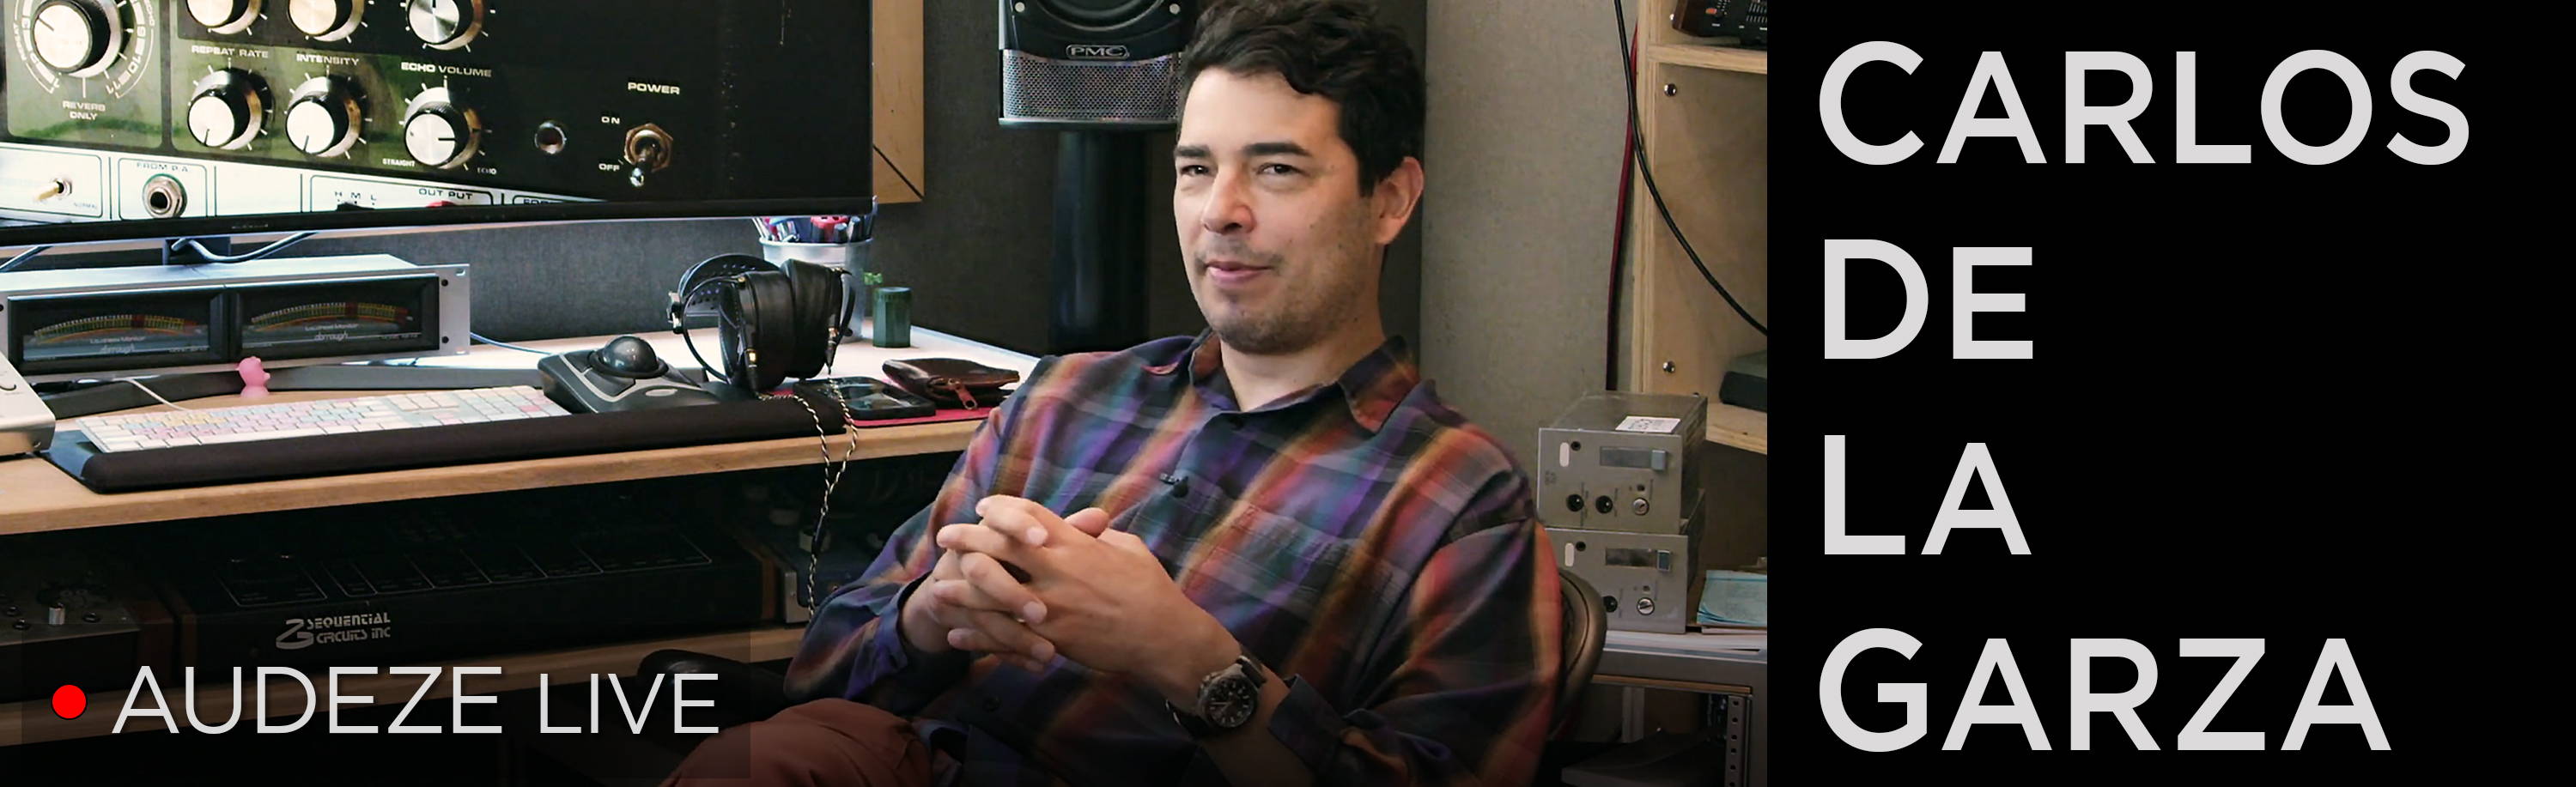 Carlos De La Garza at his studio desk